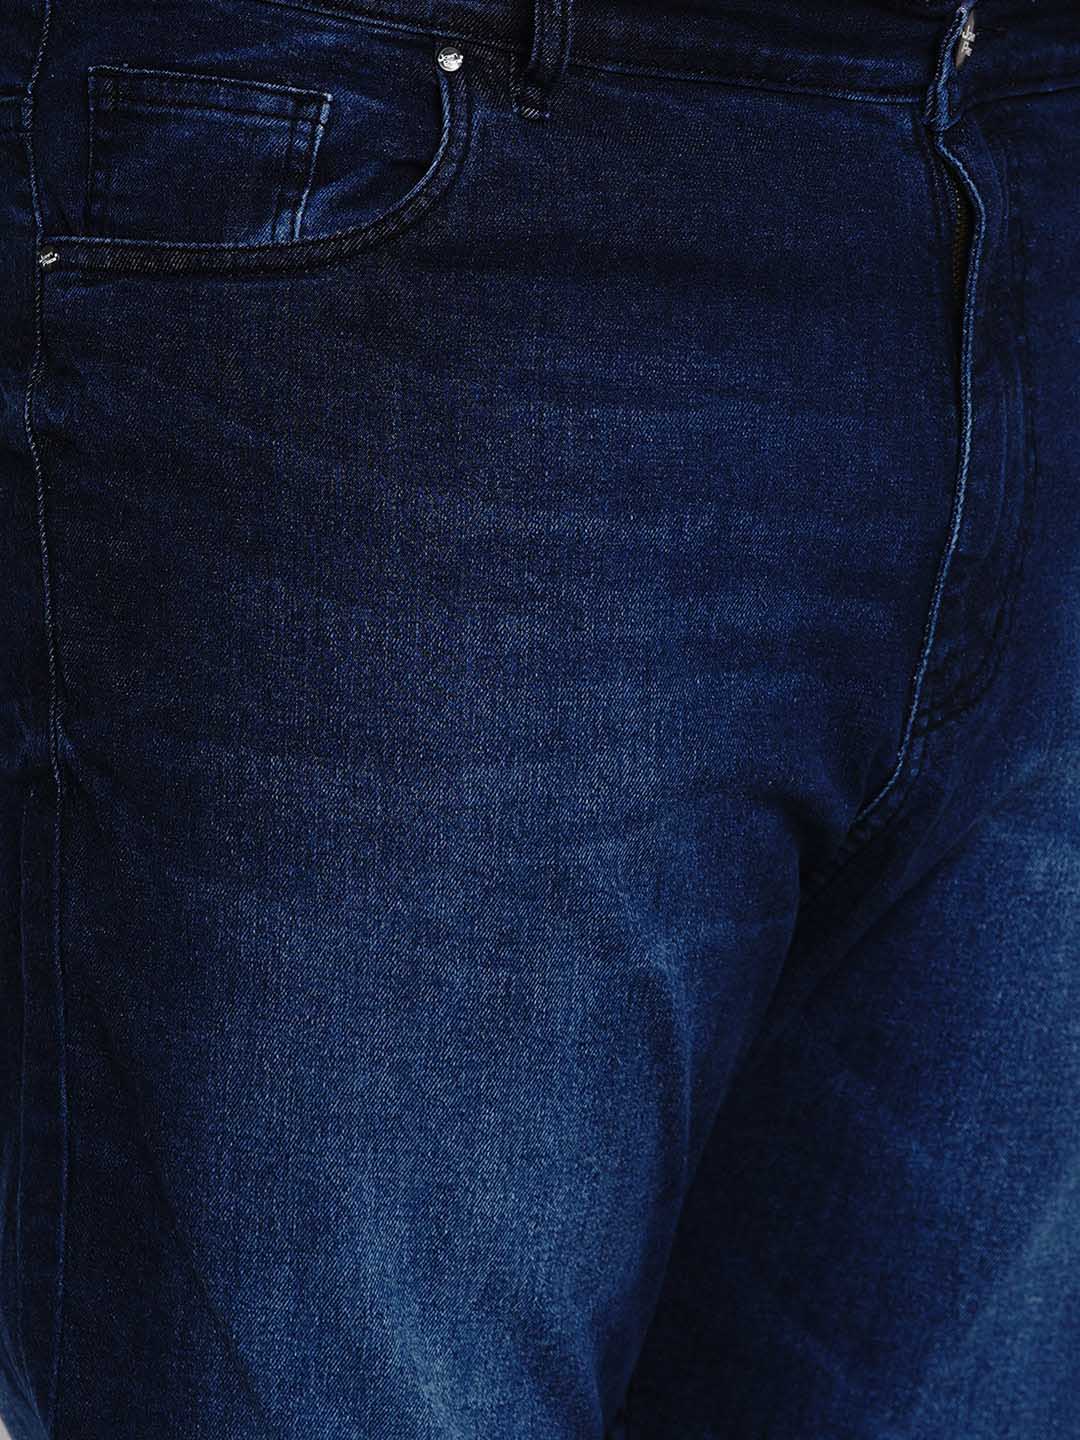 bottomwear/jeans/BEPLJPJ1277/bepljpj1277-3.jpg